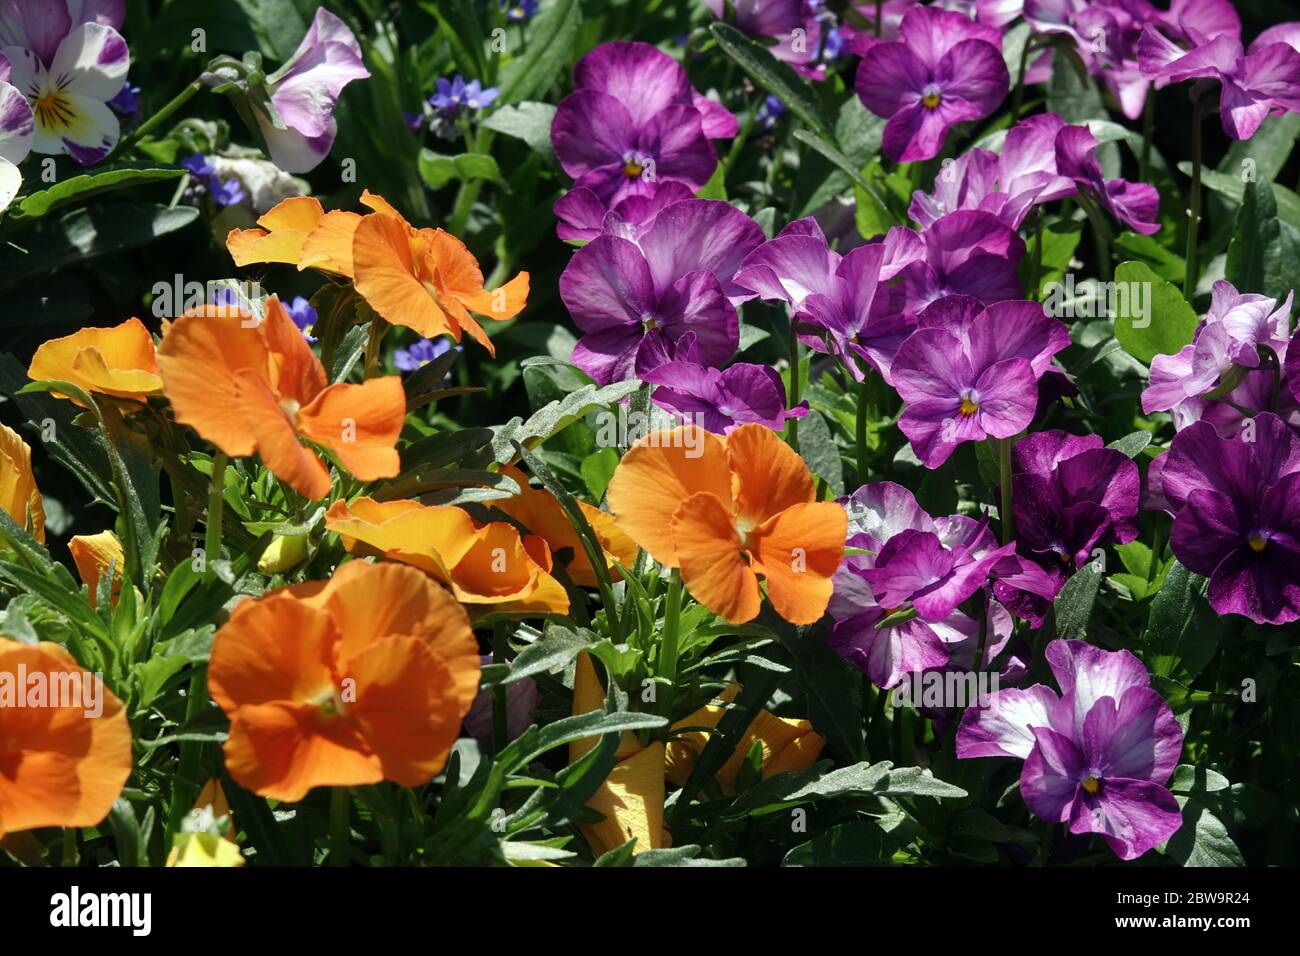 Pansies and violets, Violas in garden flower bed Orange pansies Stock Photo